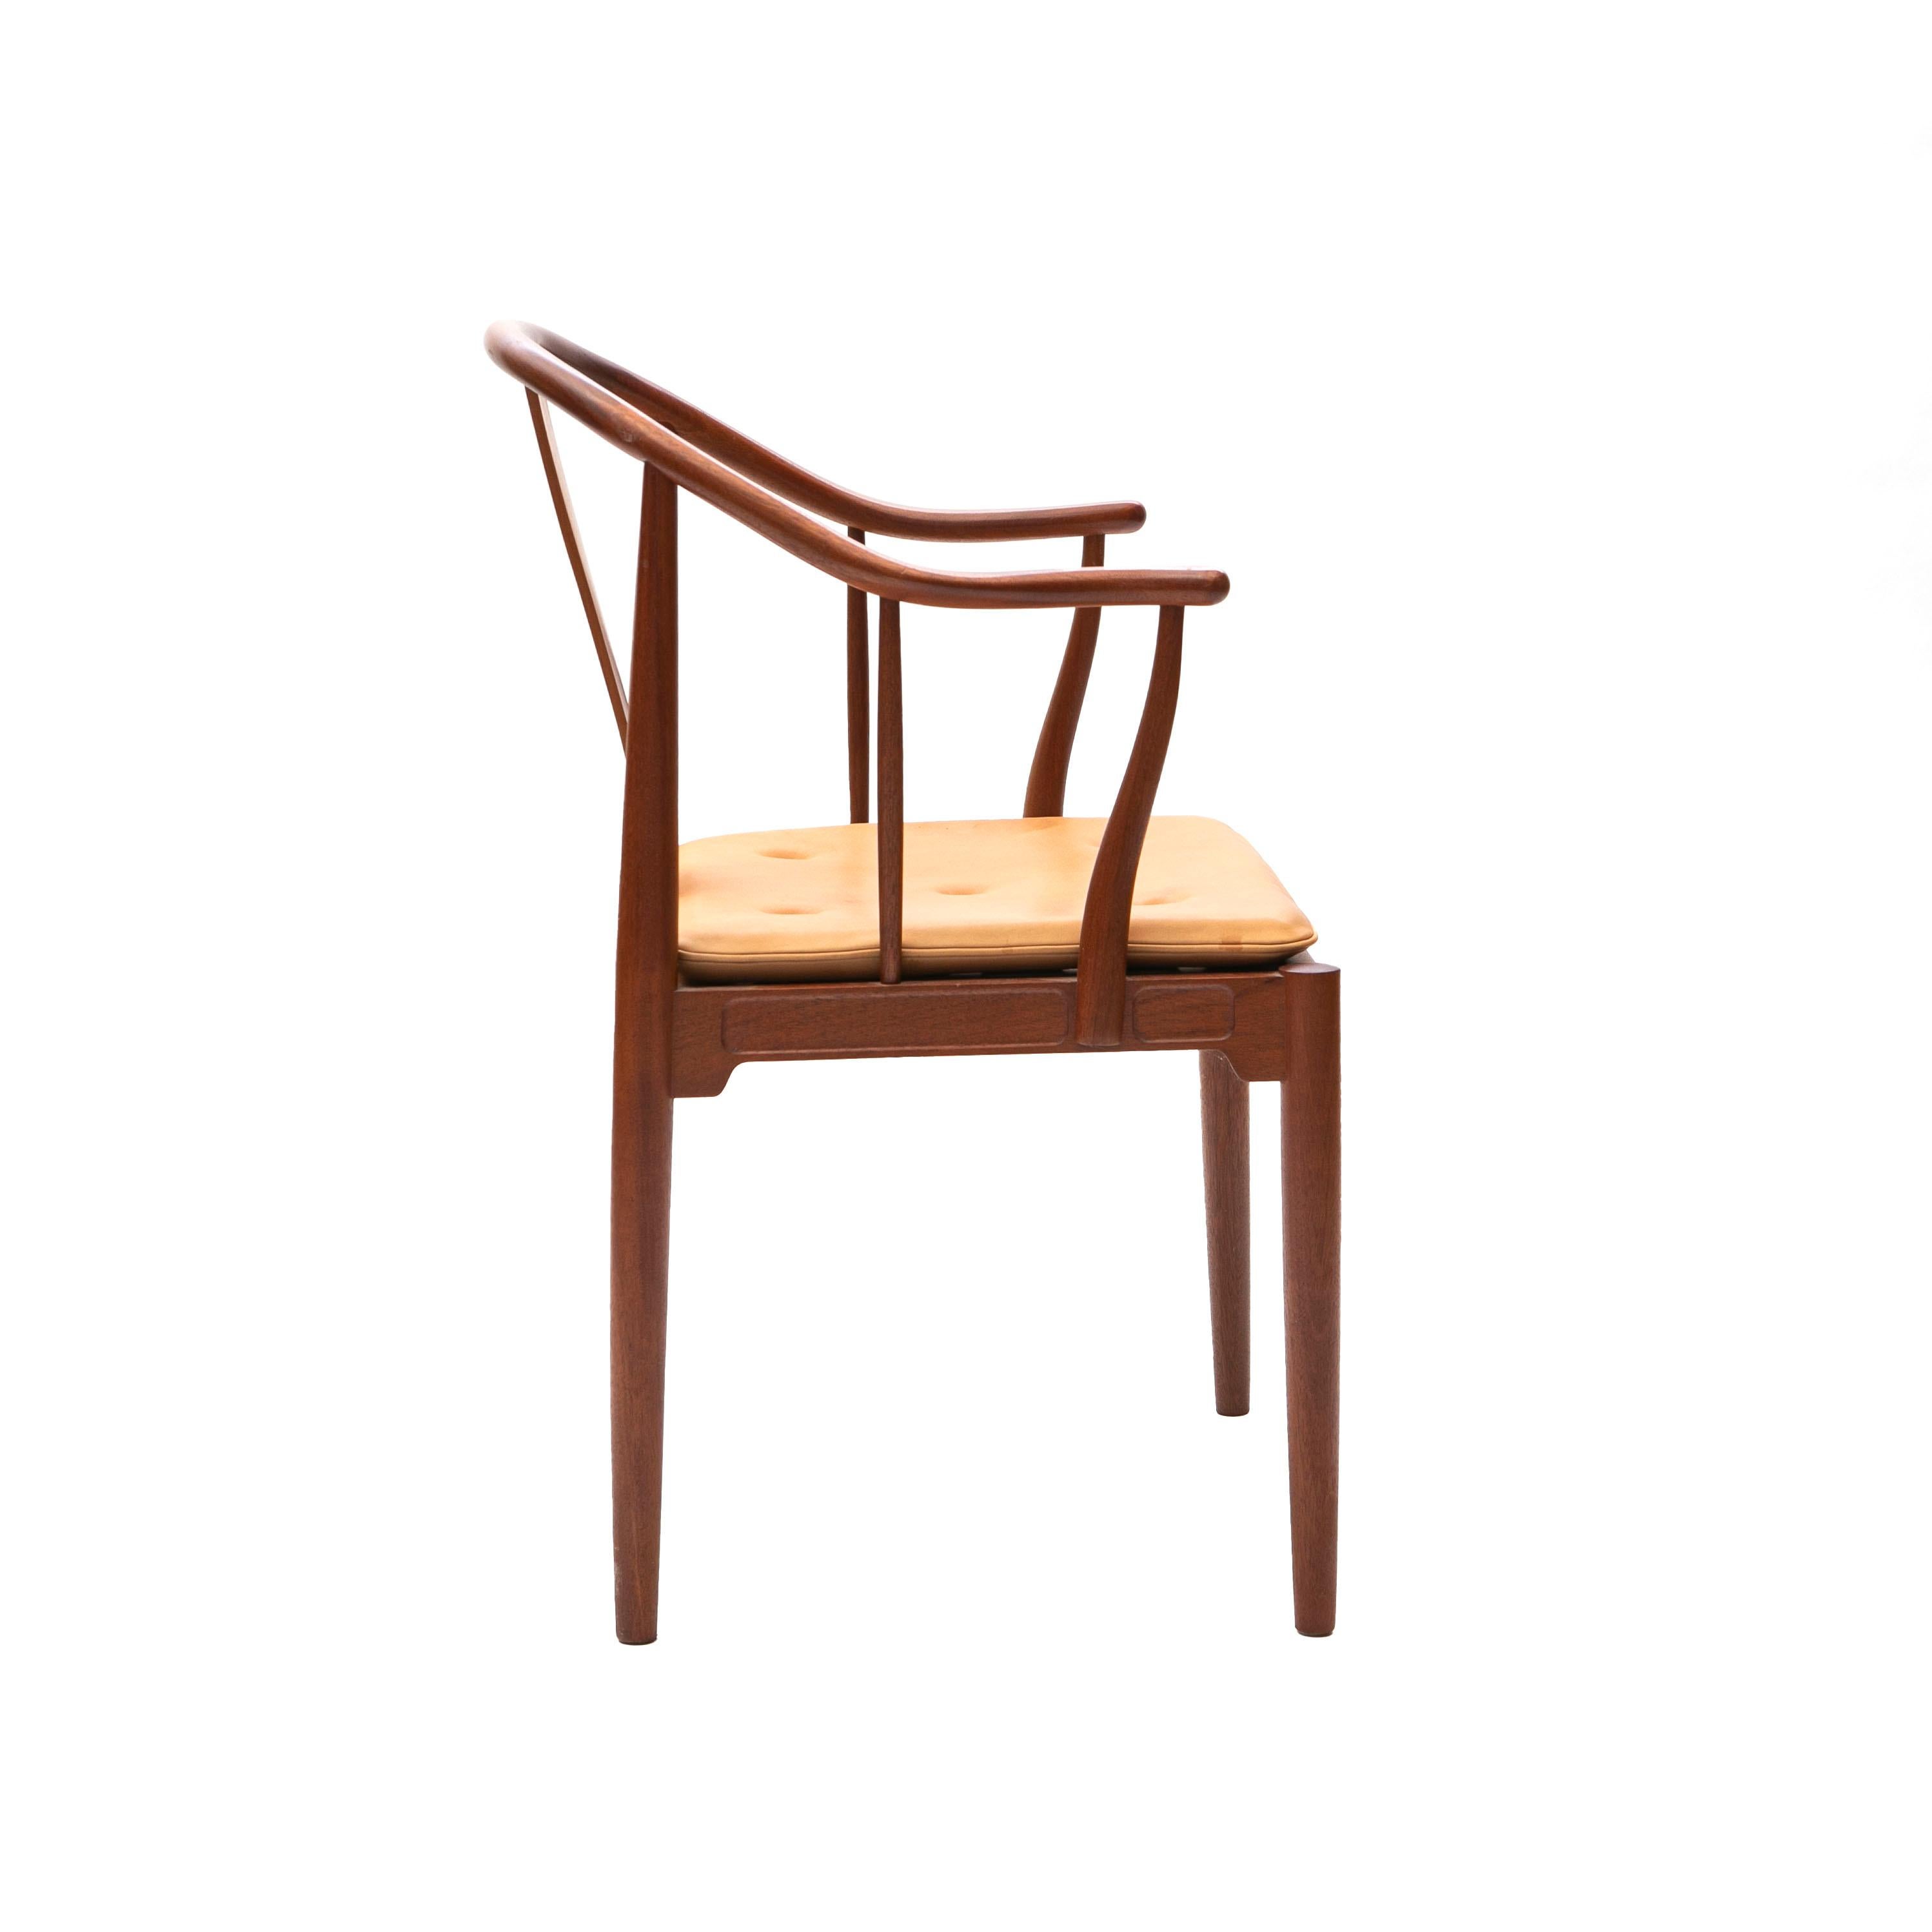 Hans J. Wegner La silla China en caoba con cojín de cuero natural.
Diseñado en 1944 y fabricado por Fritz Hansen, 1991.

Muy buen estado original.